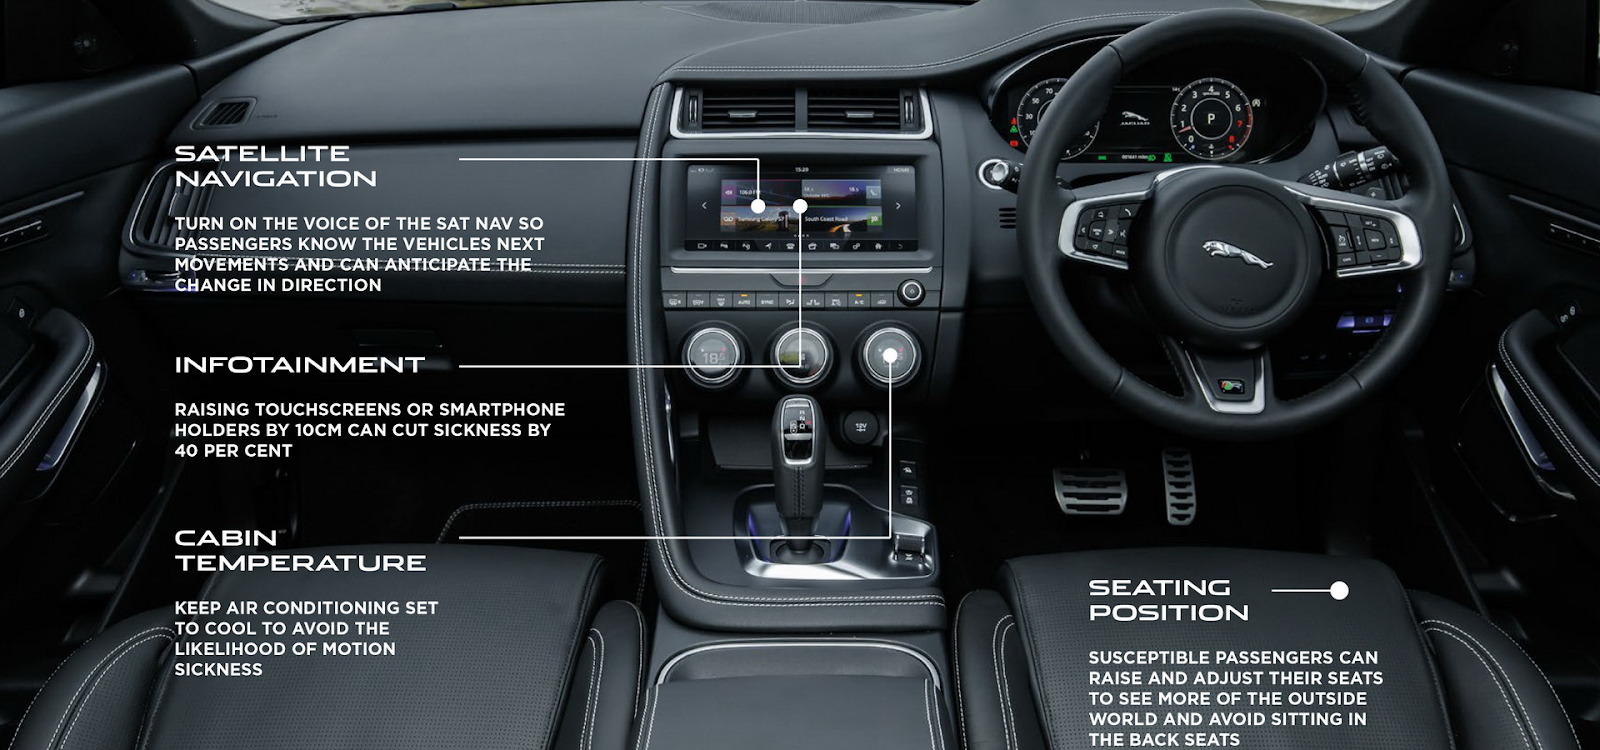 Биометрический сенсор и камера в салоне будущих автомобилей Jaguar Land Rover